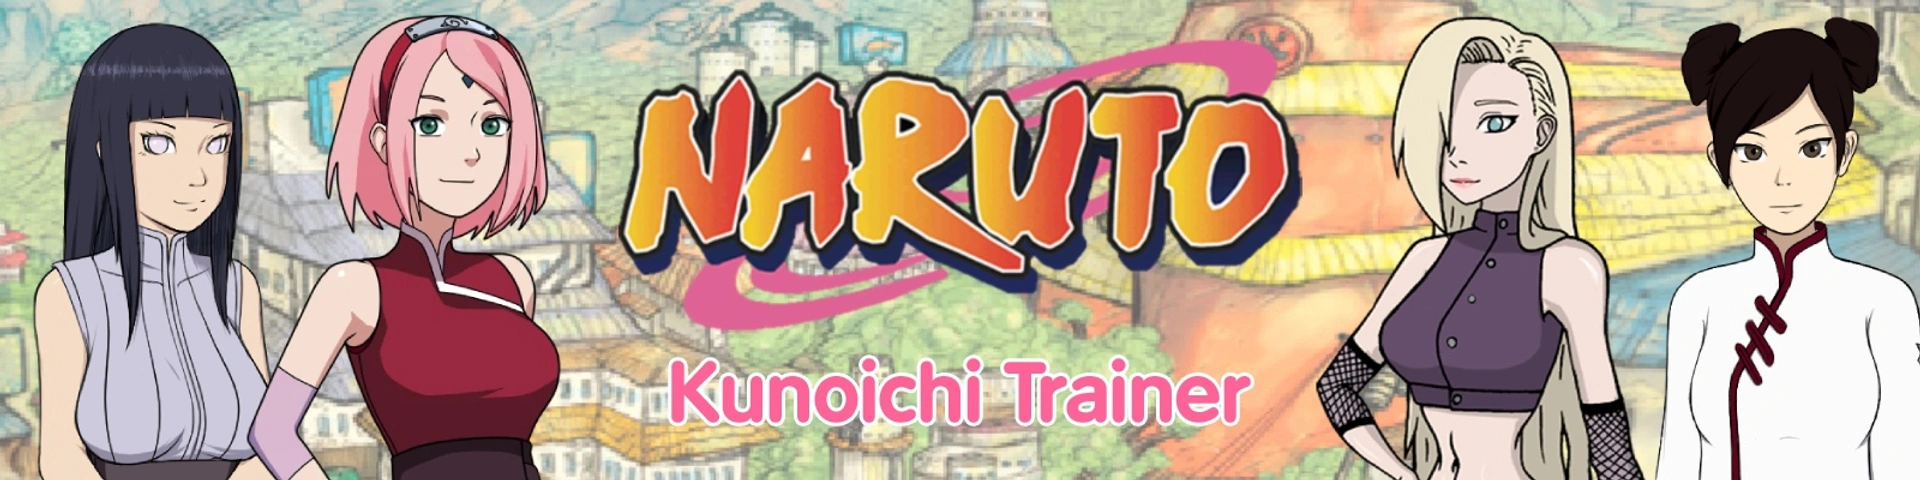 Kunoichi Trainer [v0.11.3] main image